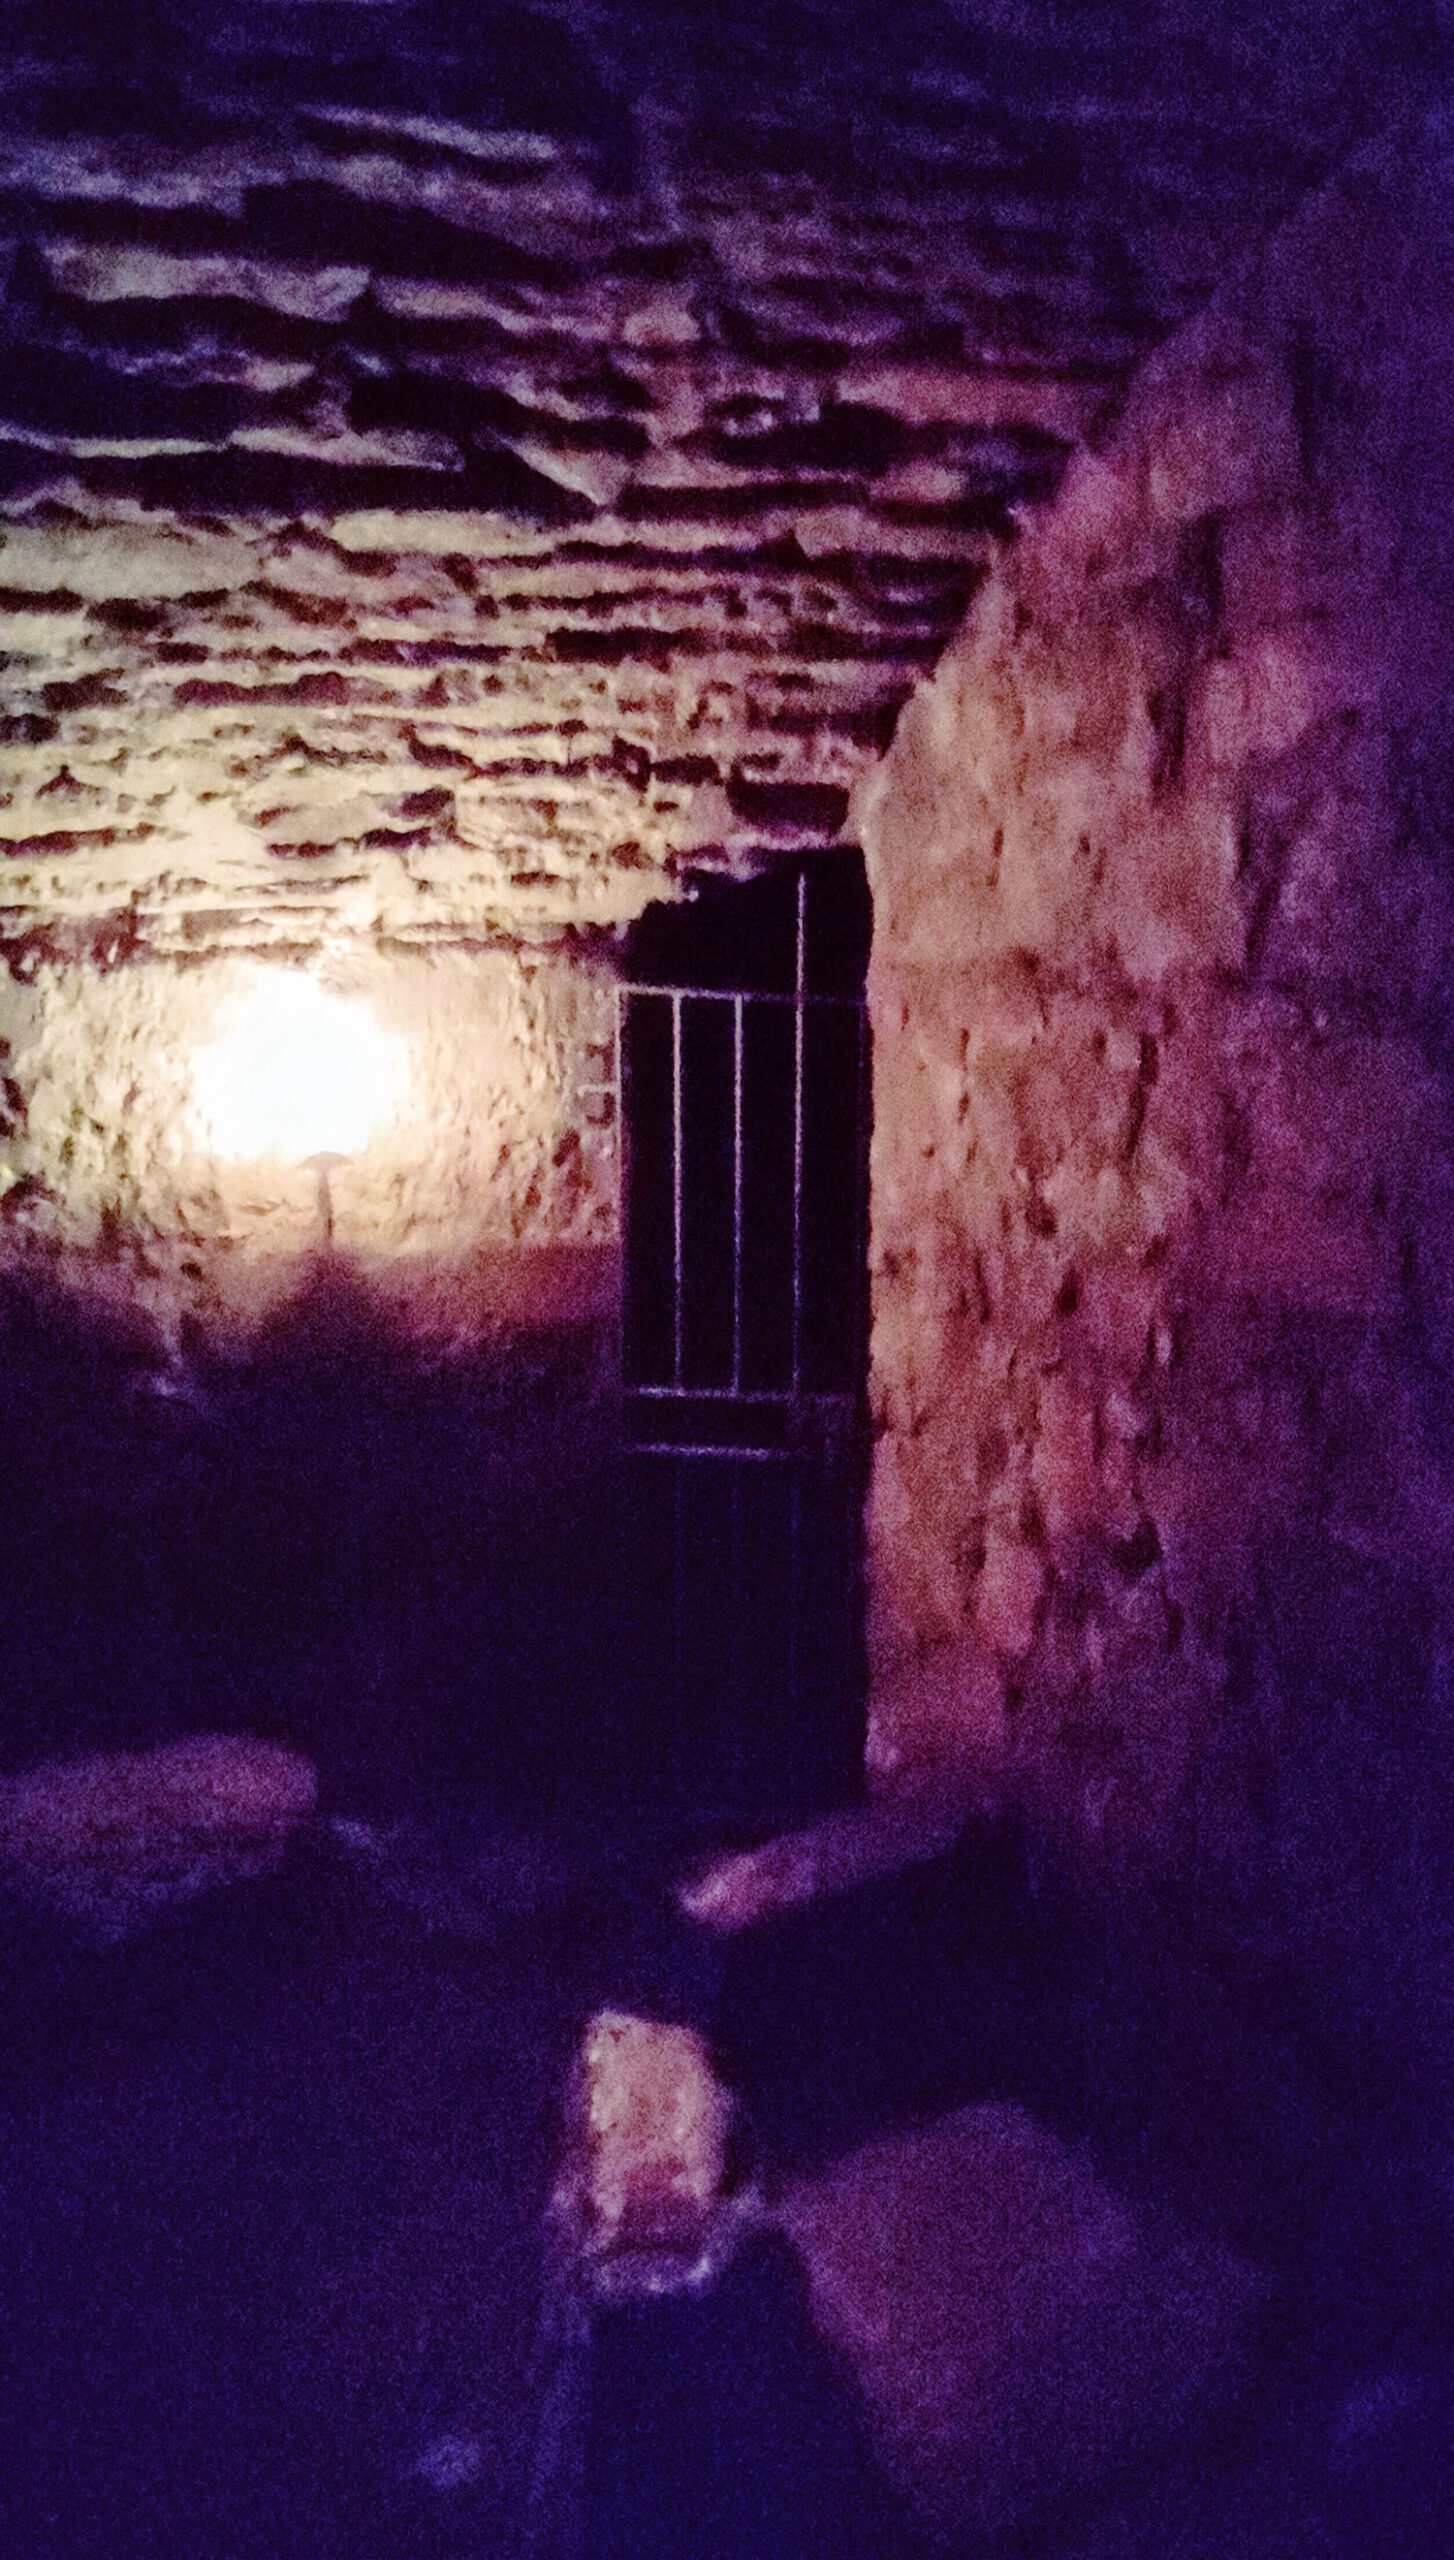 edinburgh vaults without tour